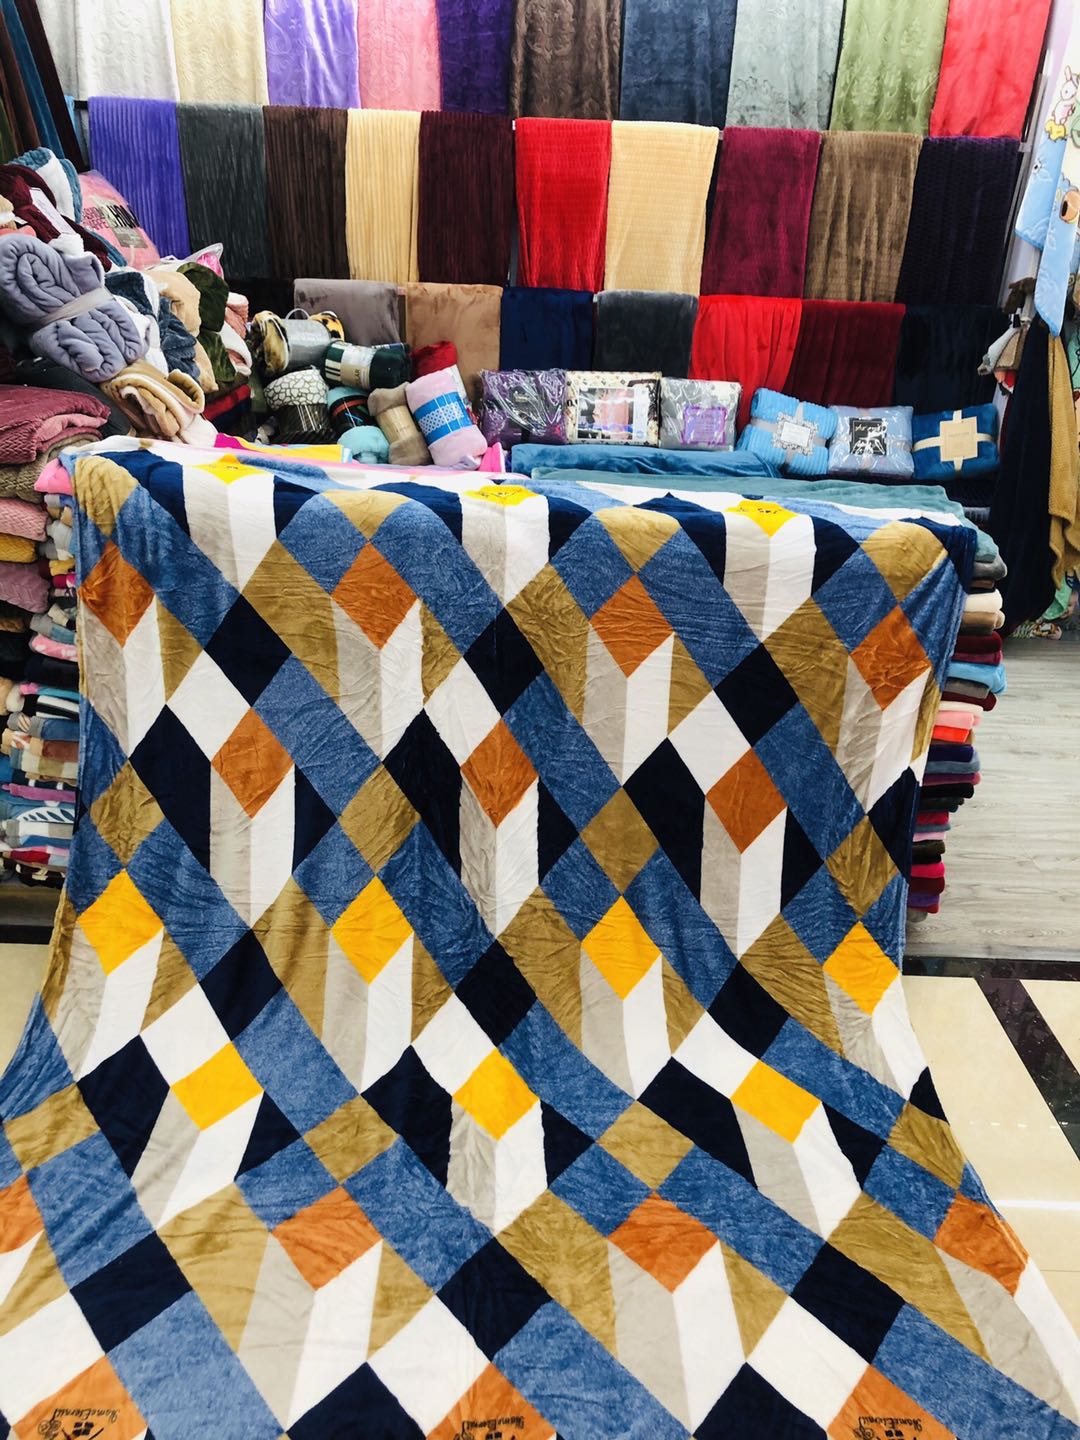 厂家直销批发零售新款精品法兰绒毛毯盖毯31